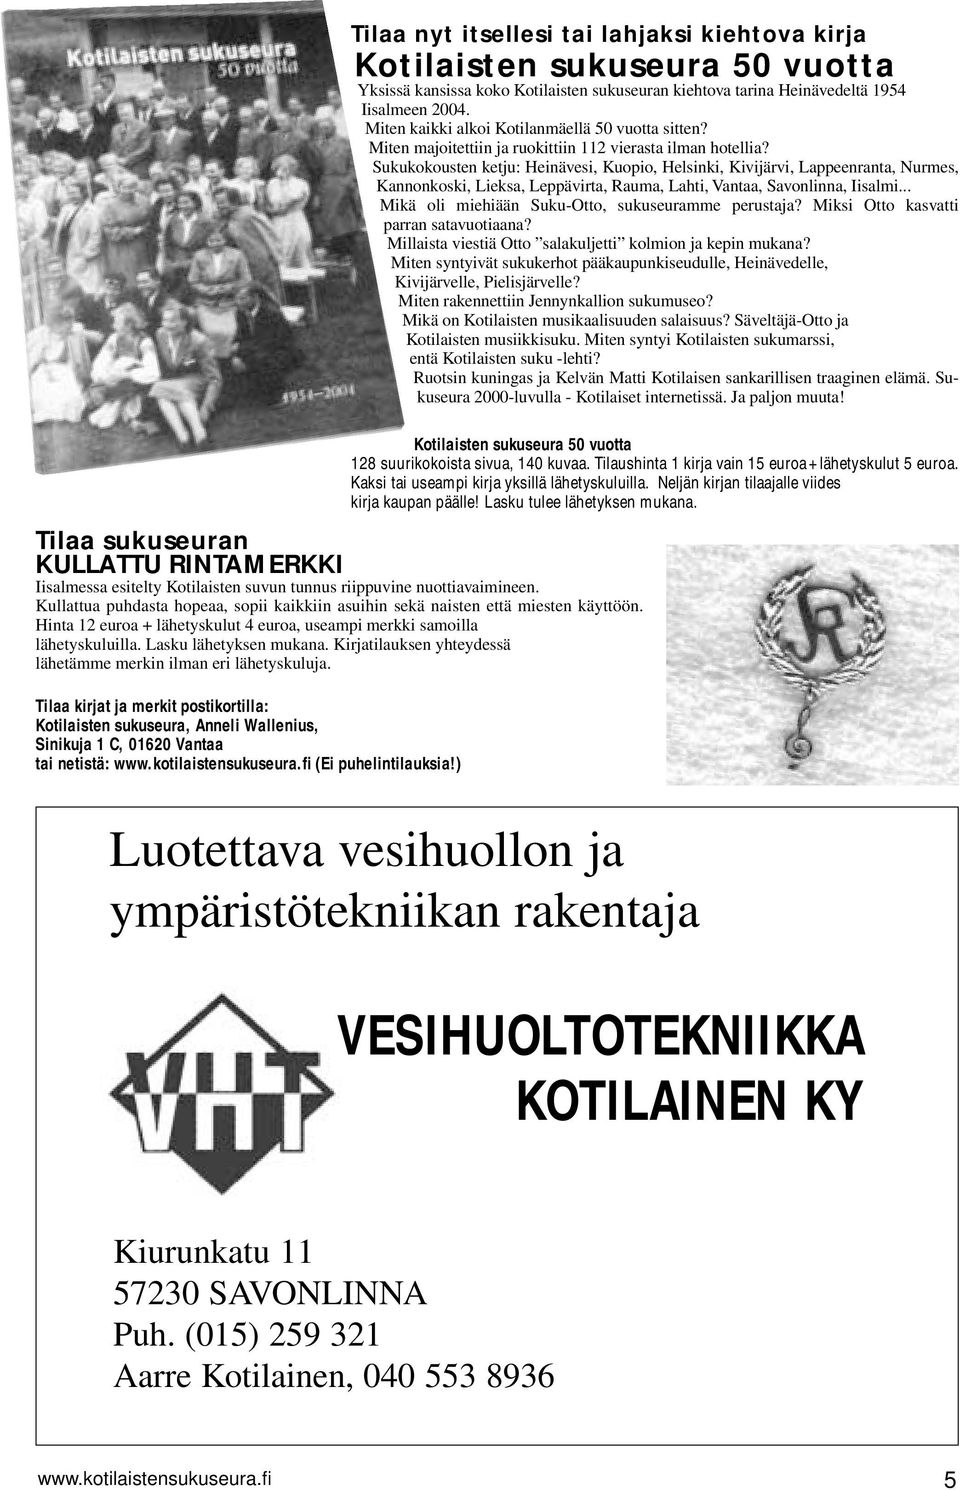 Tilaa kirjat ja merkit postikortilla: Kotilaisten sukuseura, Anneli Wallenius, Sinikuja 1 C, 01620 Vantaa tai netistä: www.kotilaistensukuseura.fi (Ei puhelintilauksia!